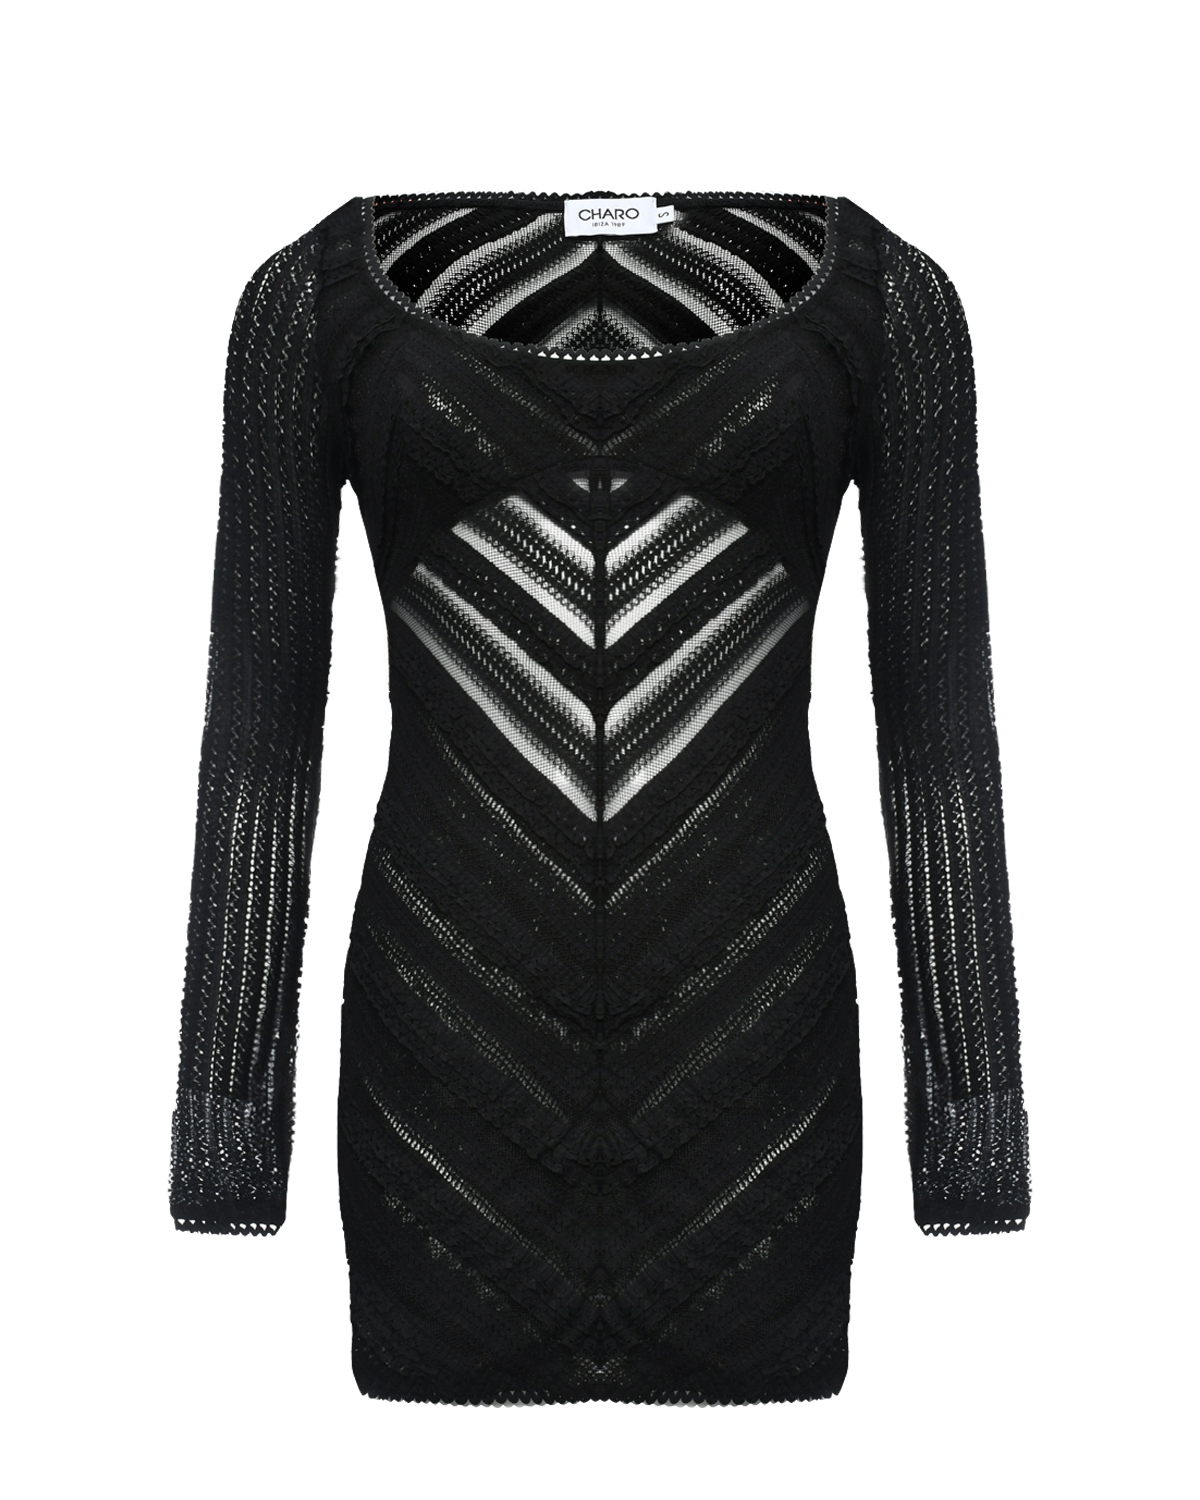 Мини-платье из фактурной ткани, черное Charo Ruiz, размер 42, цвет черный - фото 1